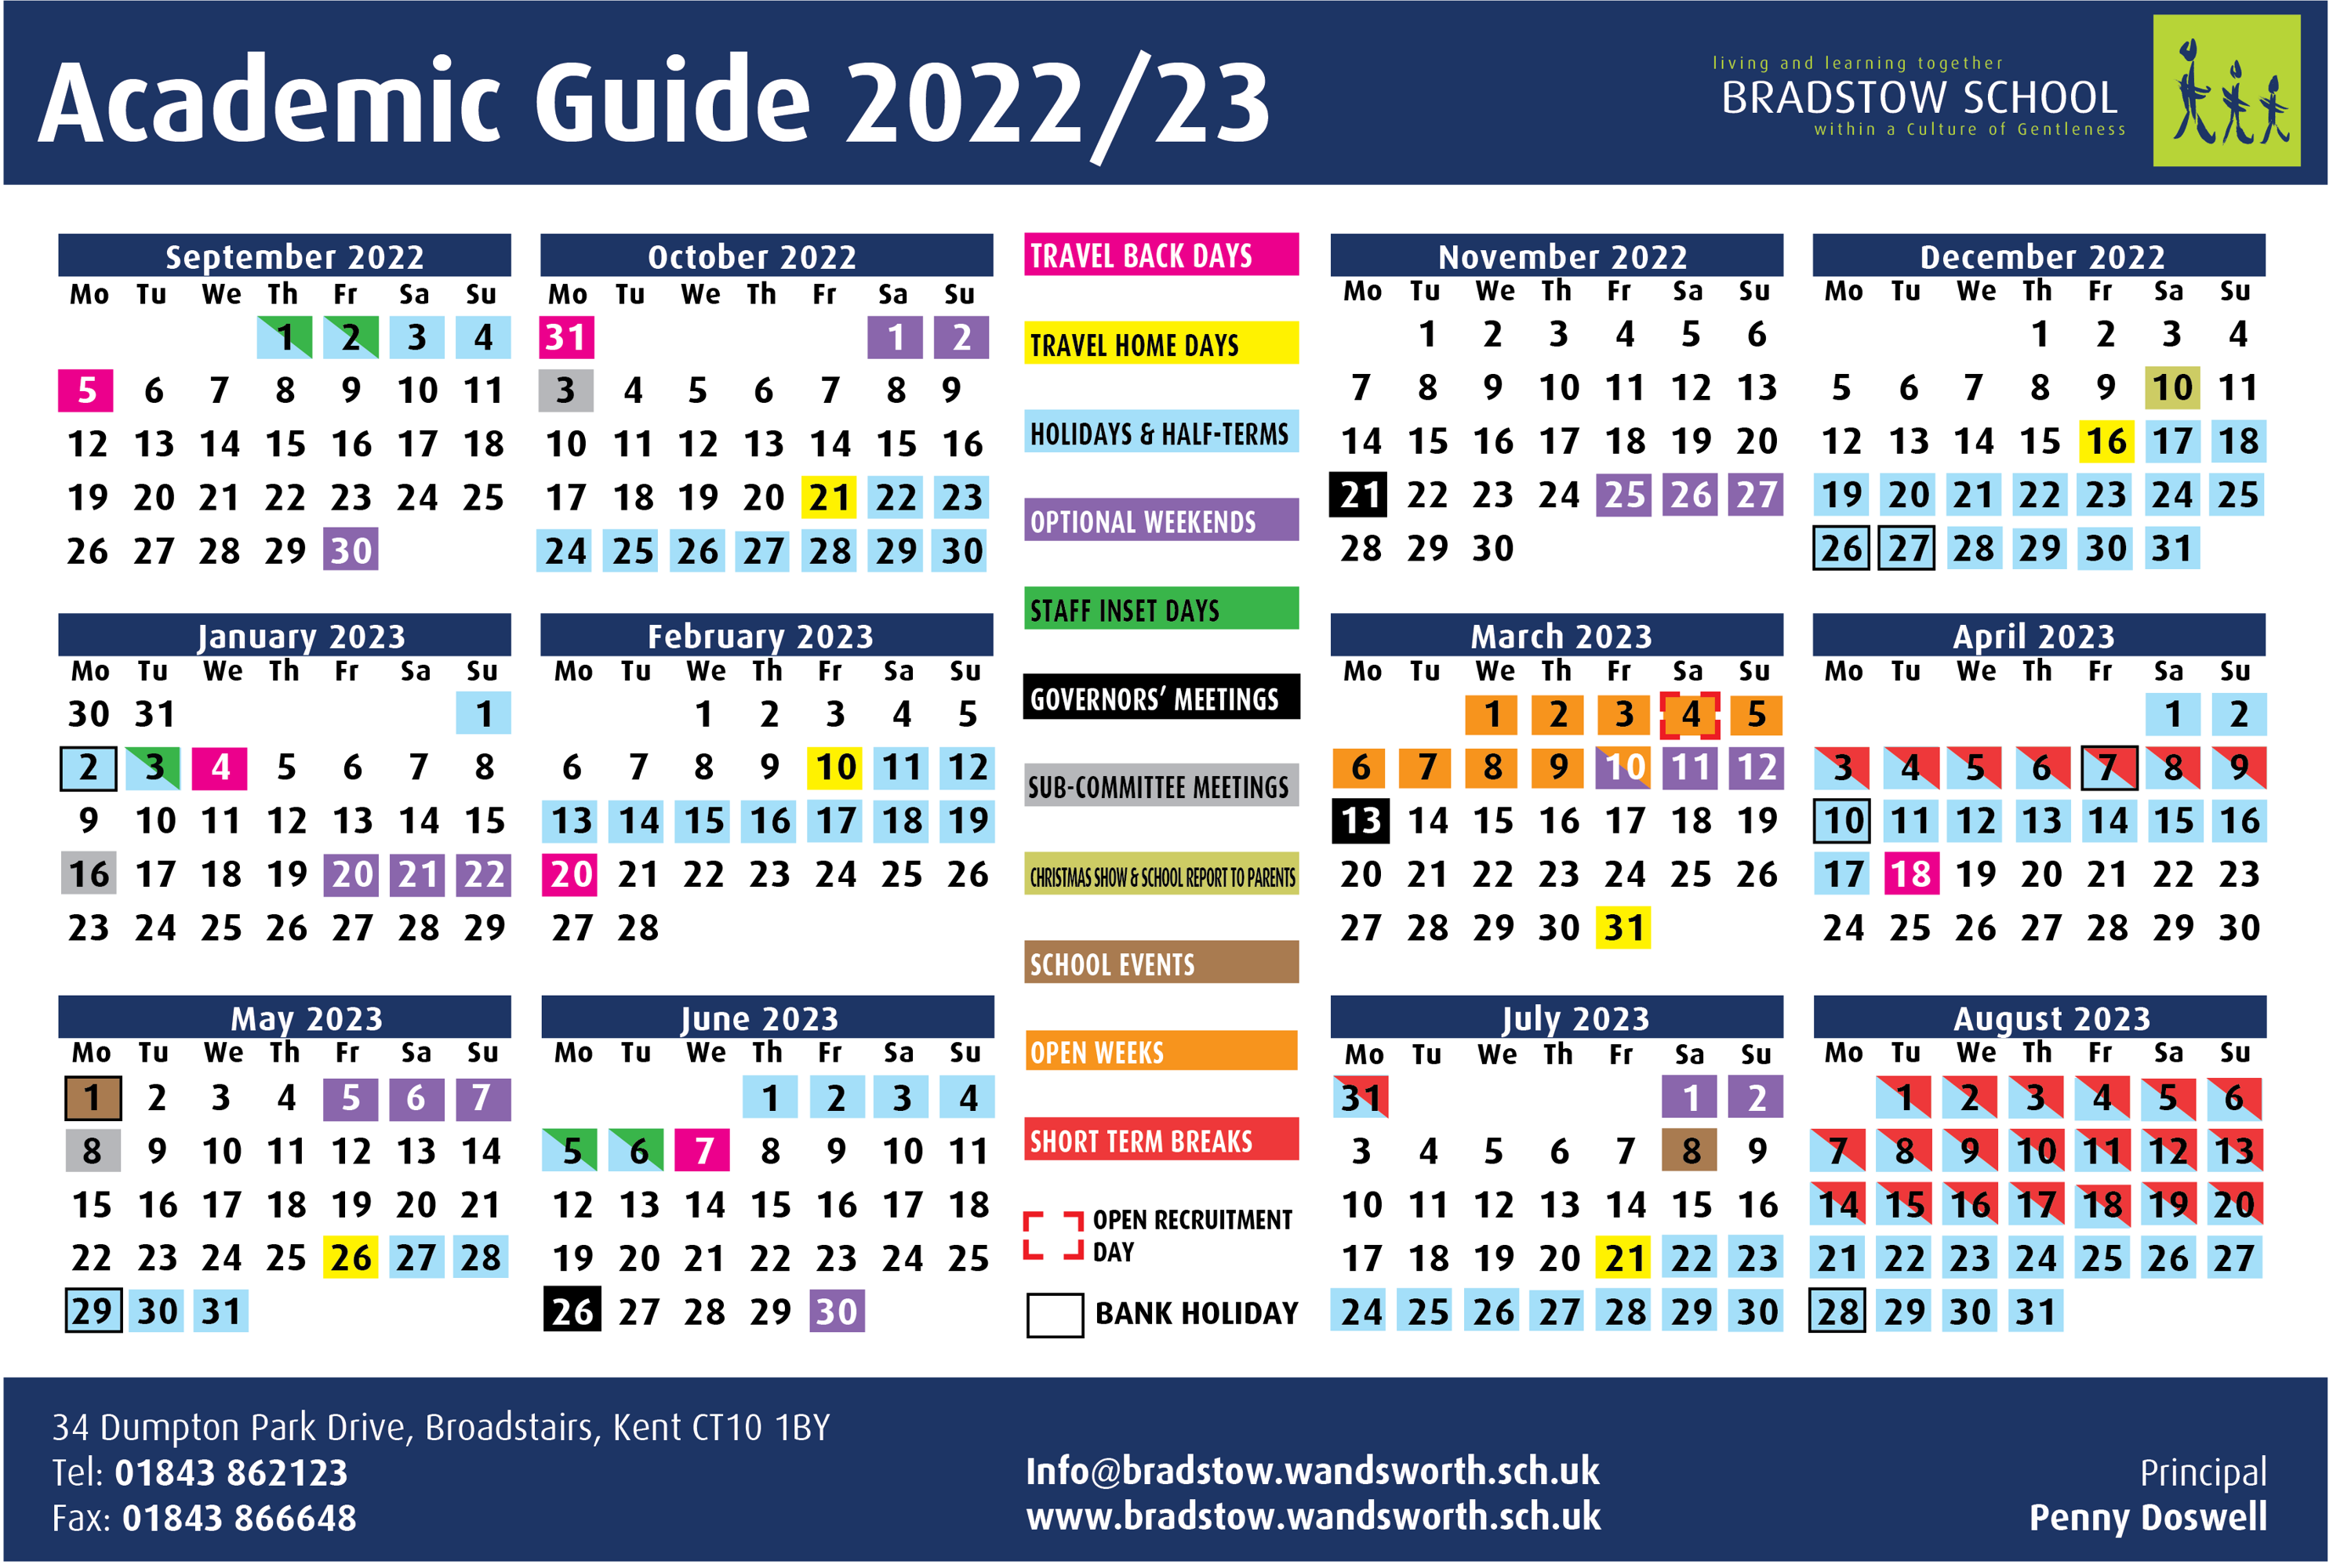 Calendar layout 2022 23 updated 21sept2022